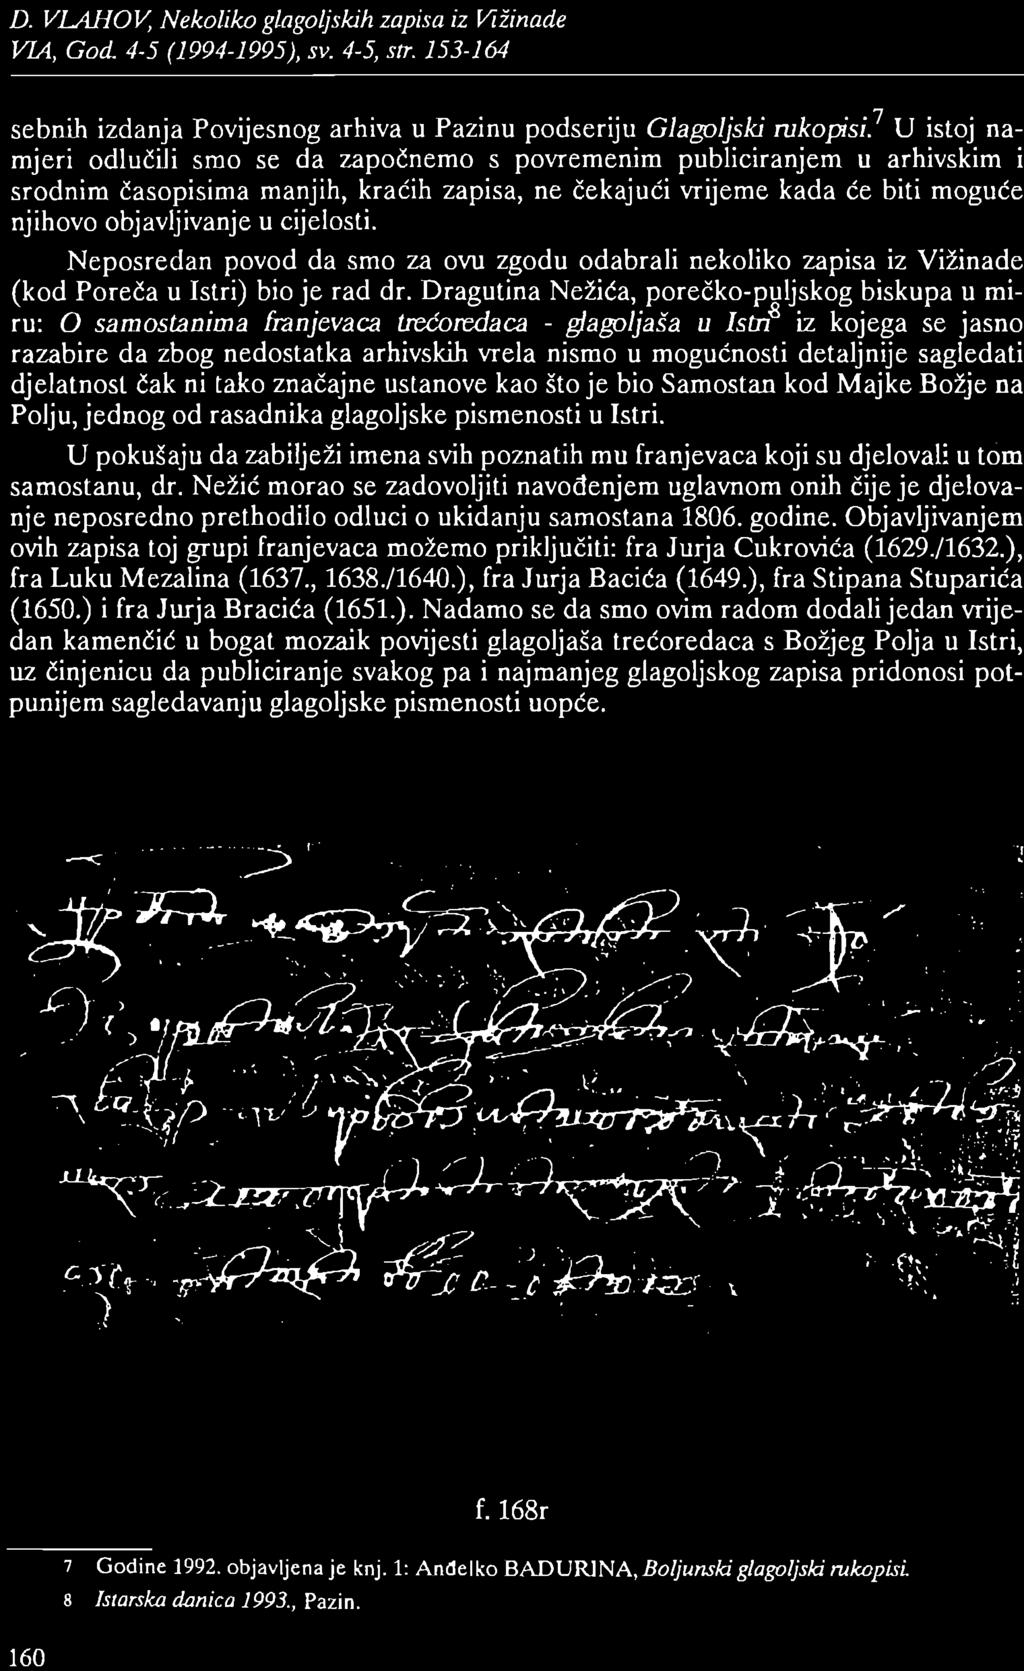 D. VLAJ-WV, Nekoliko glagoljskih zapisa iz Vižinade sebnih izdanja Povijesnog arhiva u Pazinu podseriju Glagoljski rukopisi?